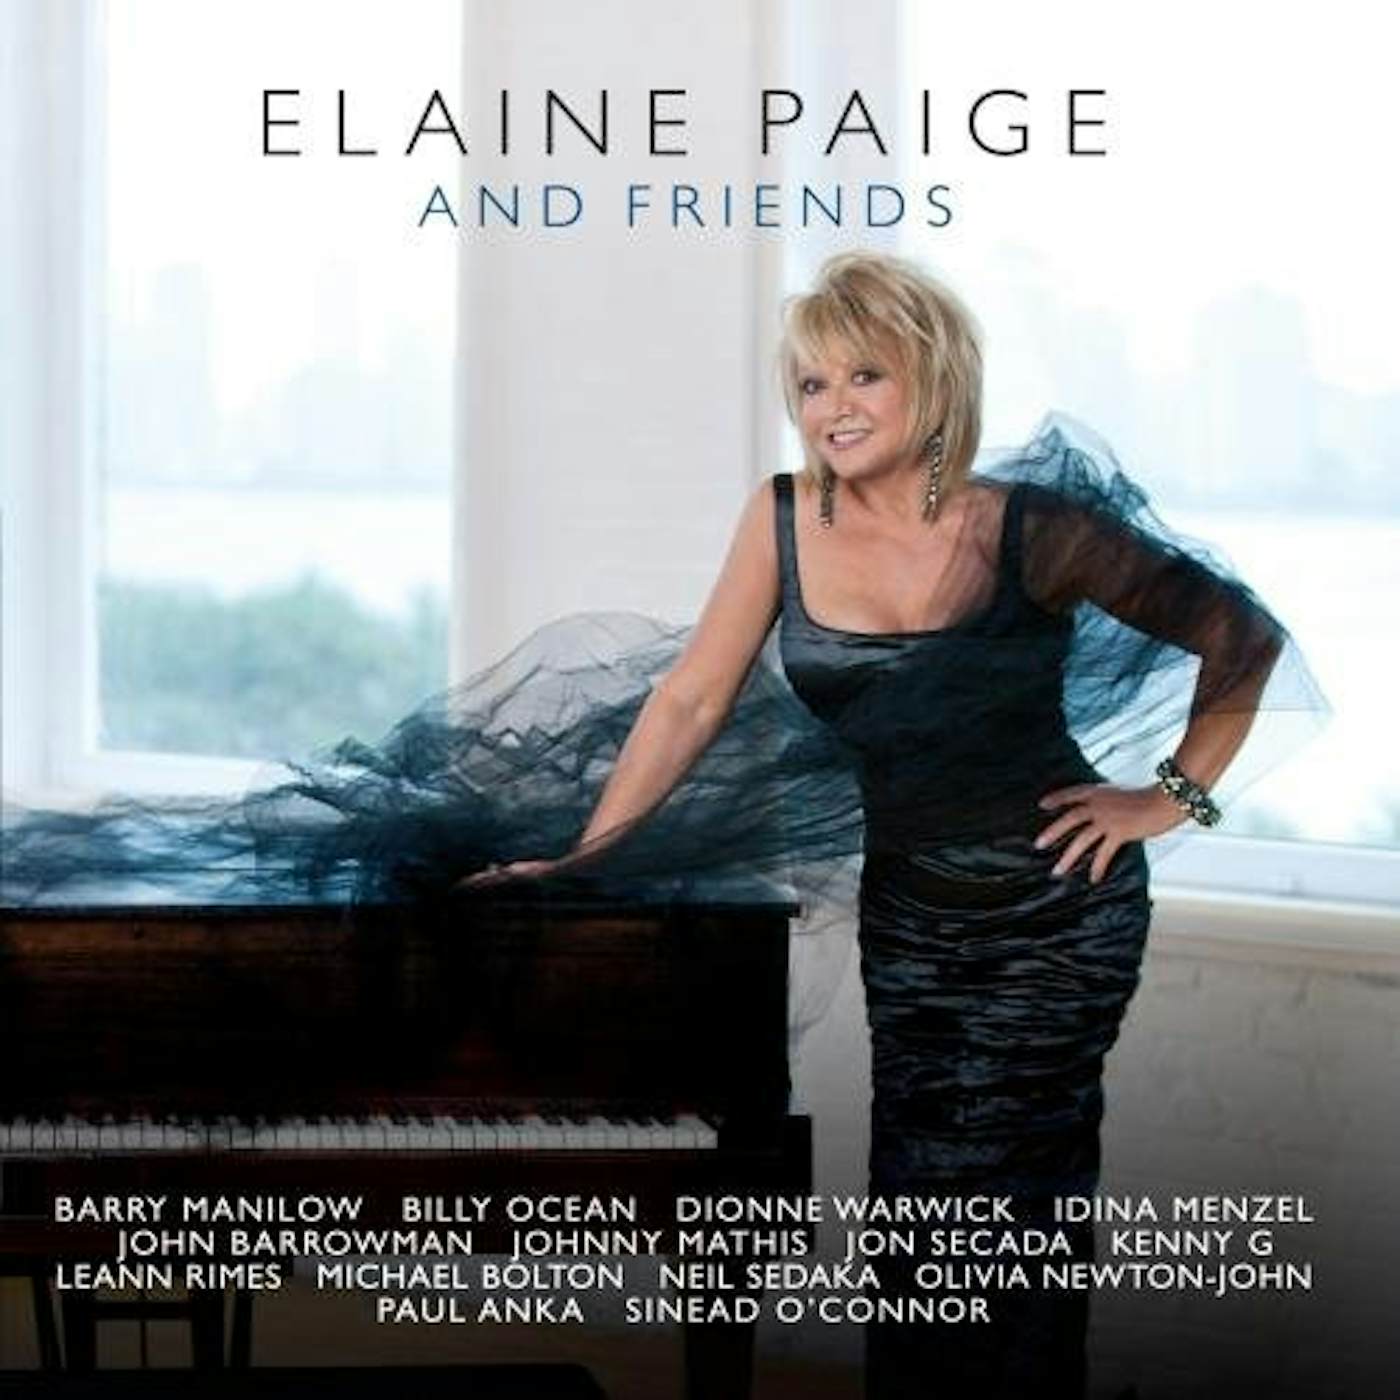 Elaine Paige ELAINE PAGE & FRIENDS CD